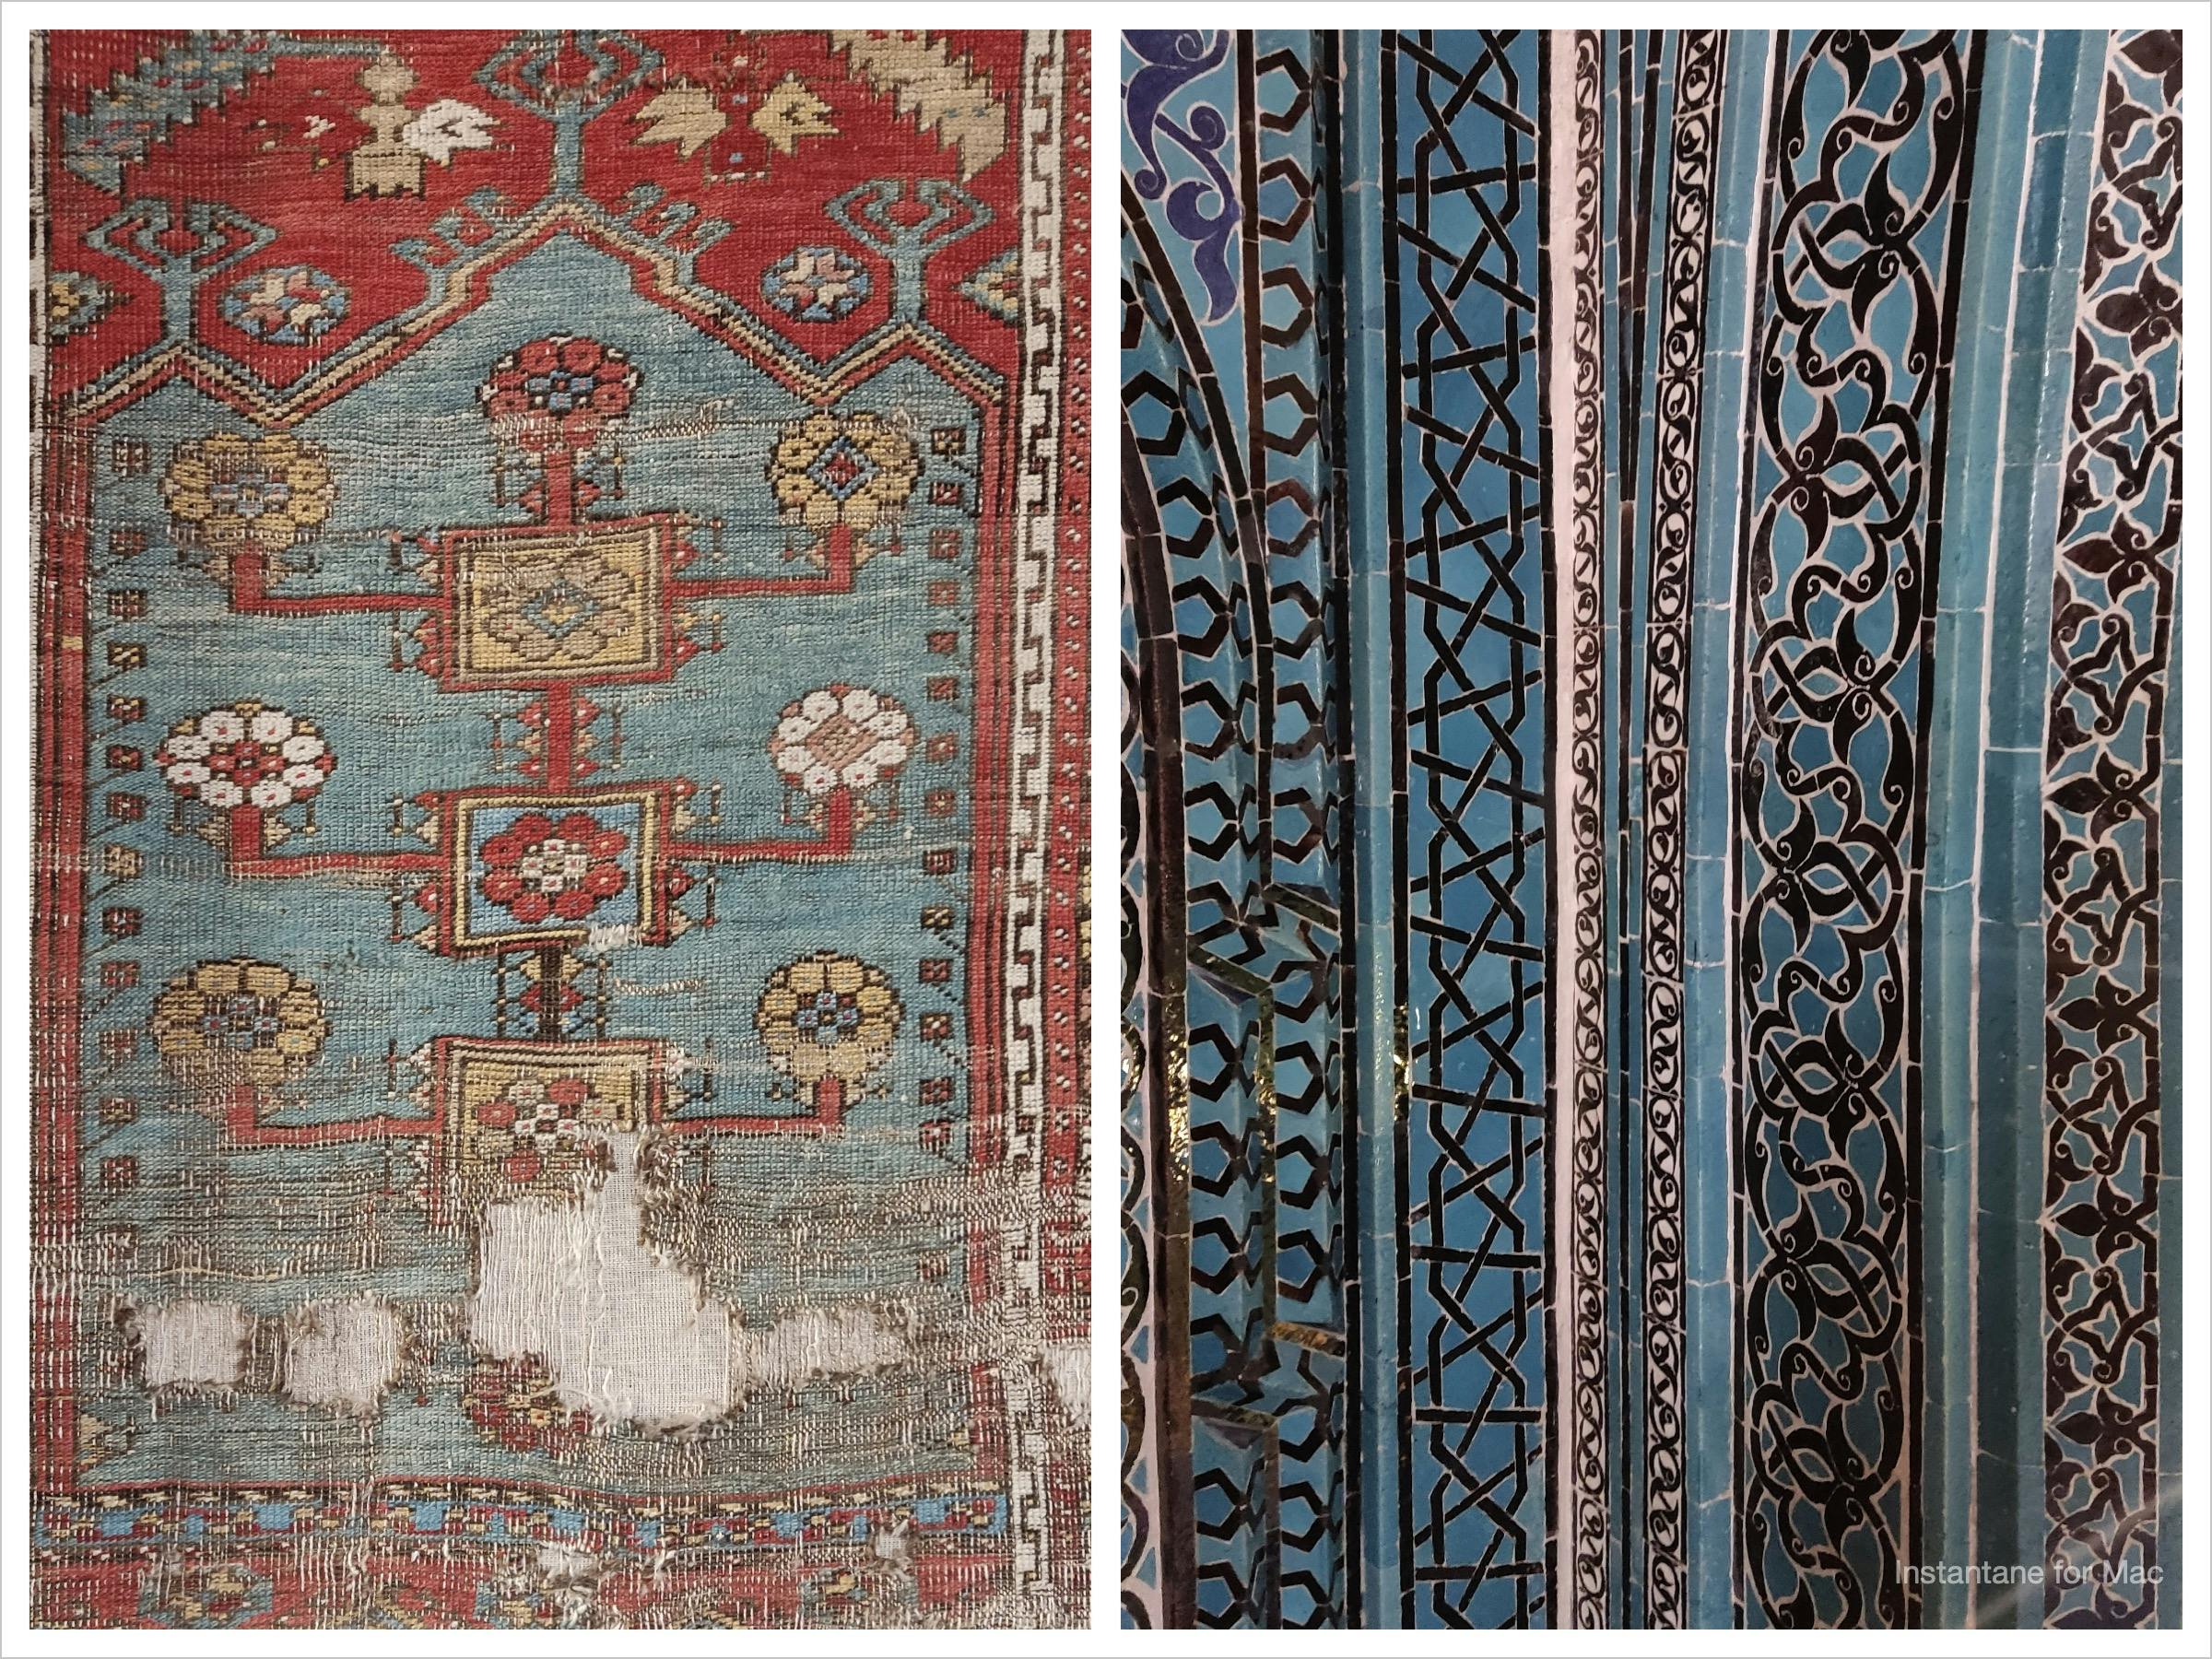 wzorzysty dywan turecki i wzorzyste niebiesko-czarno-białe kafle